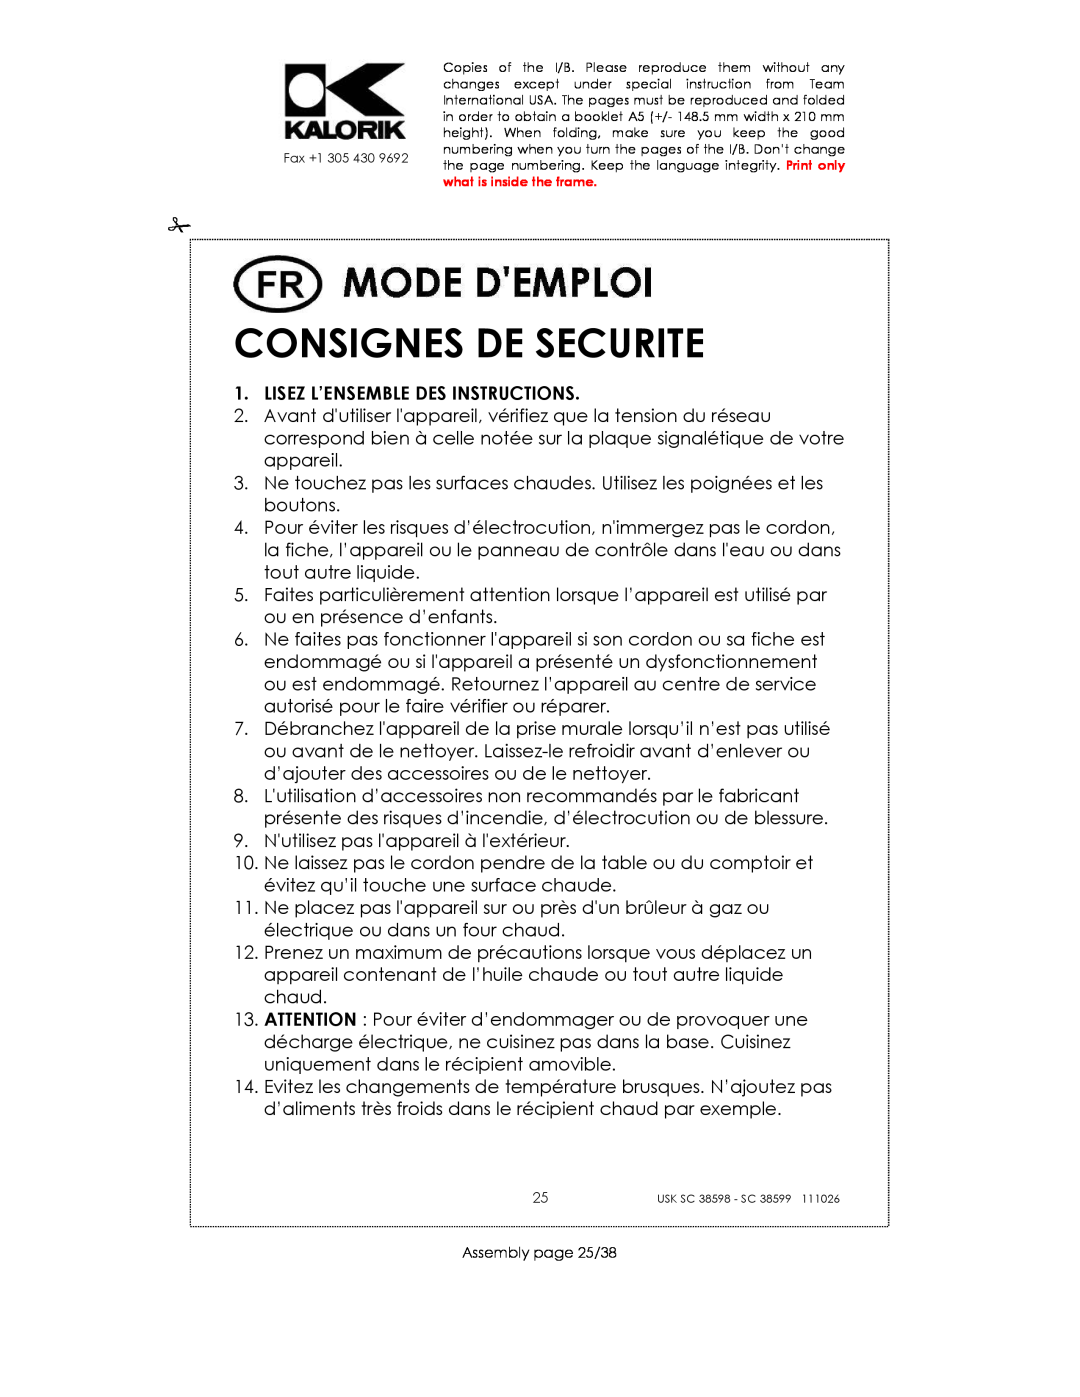 Kalorik 38599, usk sc 38598 manual Consignes De Securite, Lisez L’Ensemble Des Instructions 